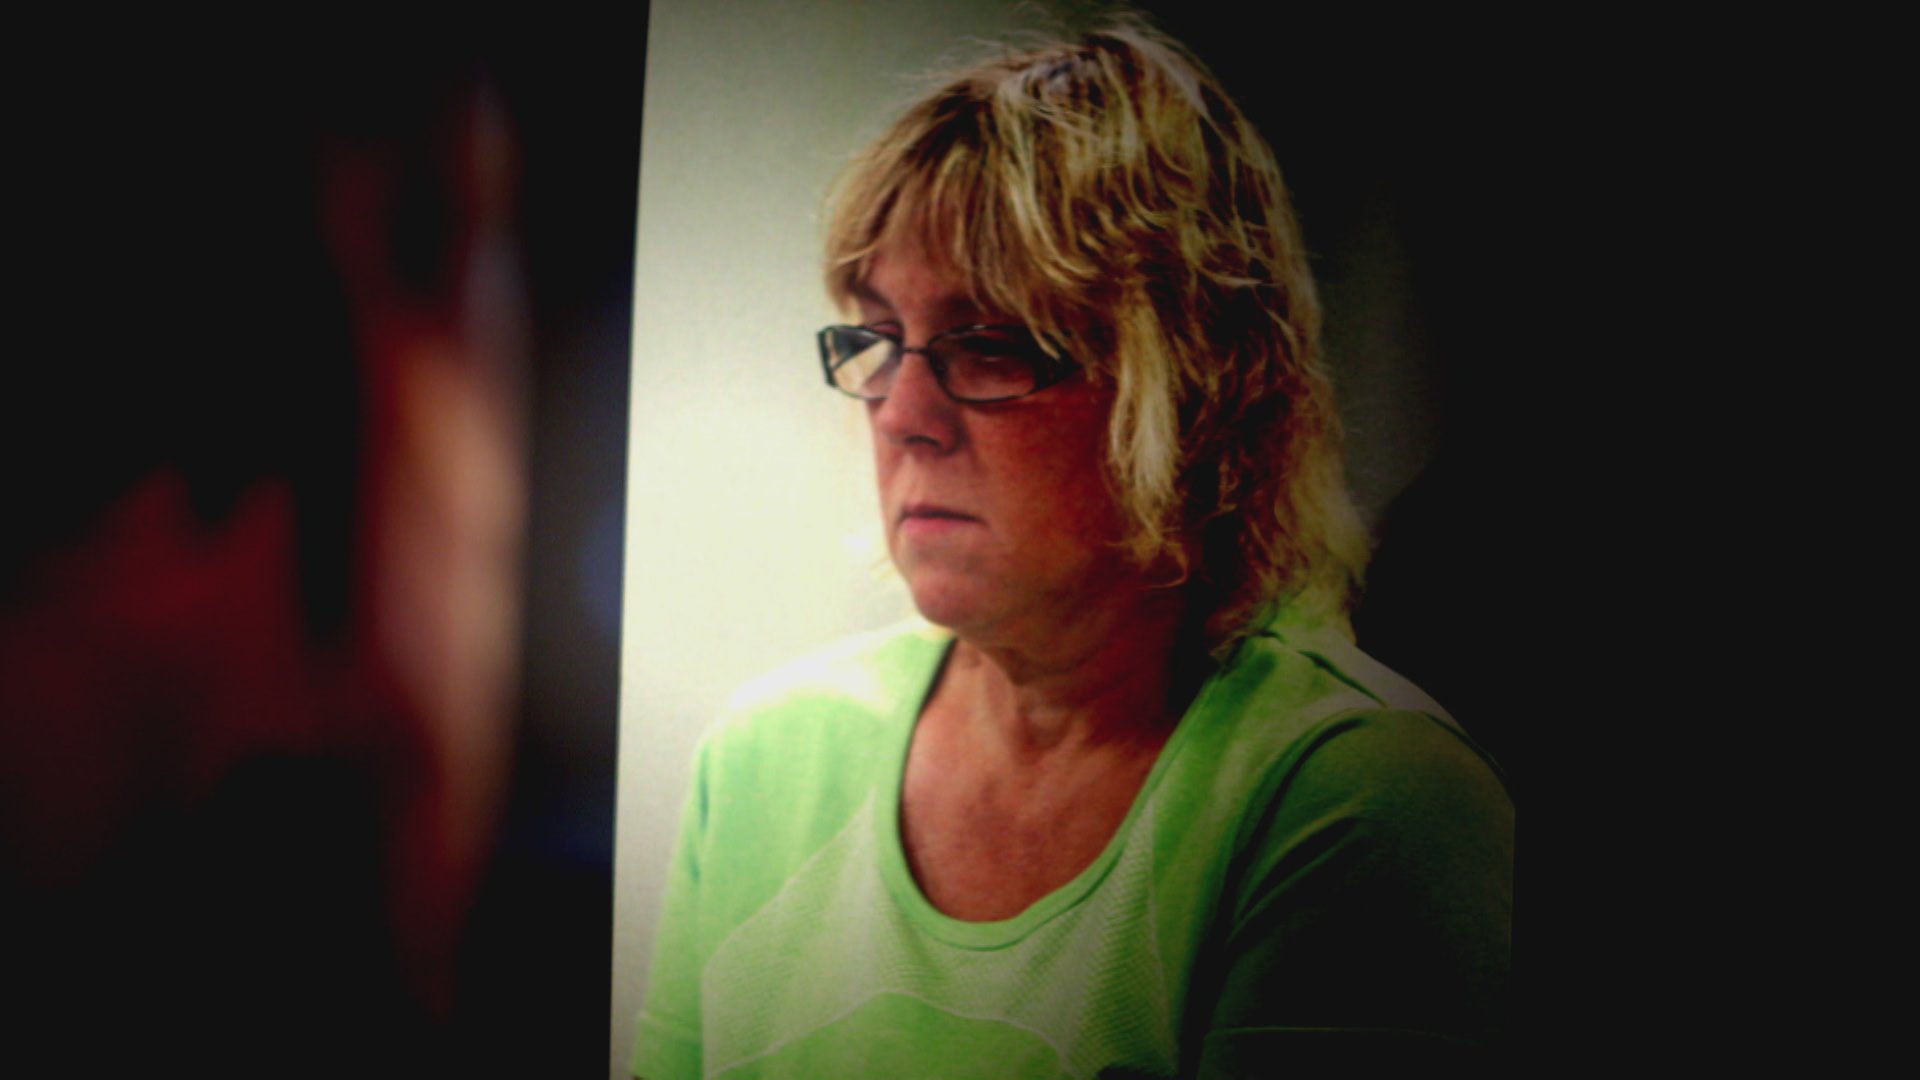 Dannemora Prison Break: Joyce Mitchell's Newfound Attention